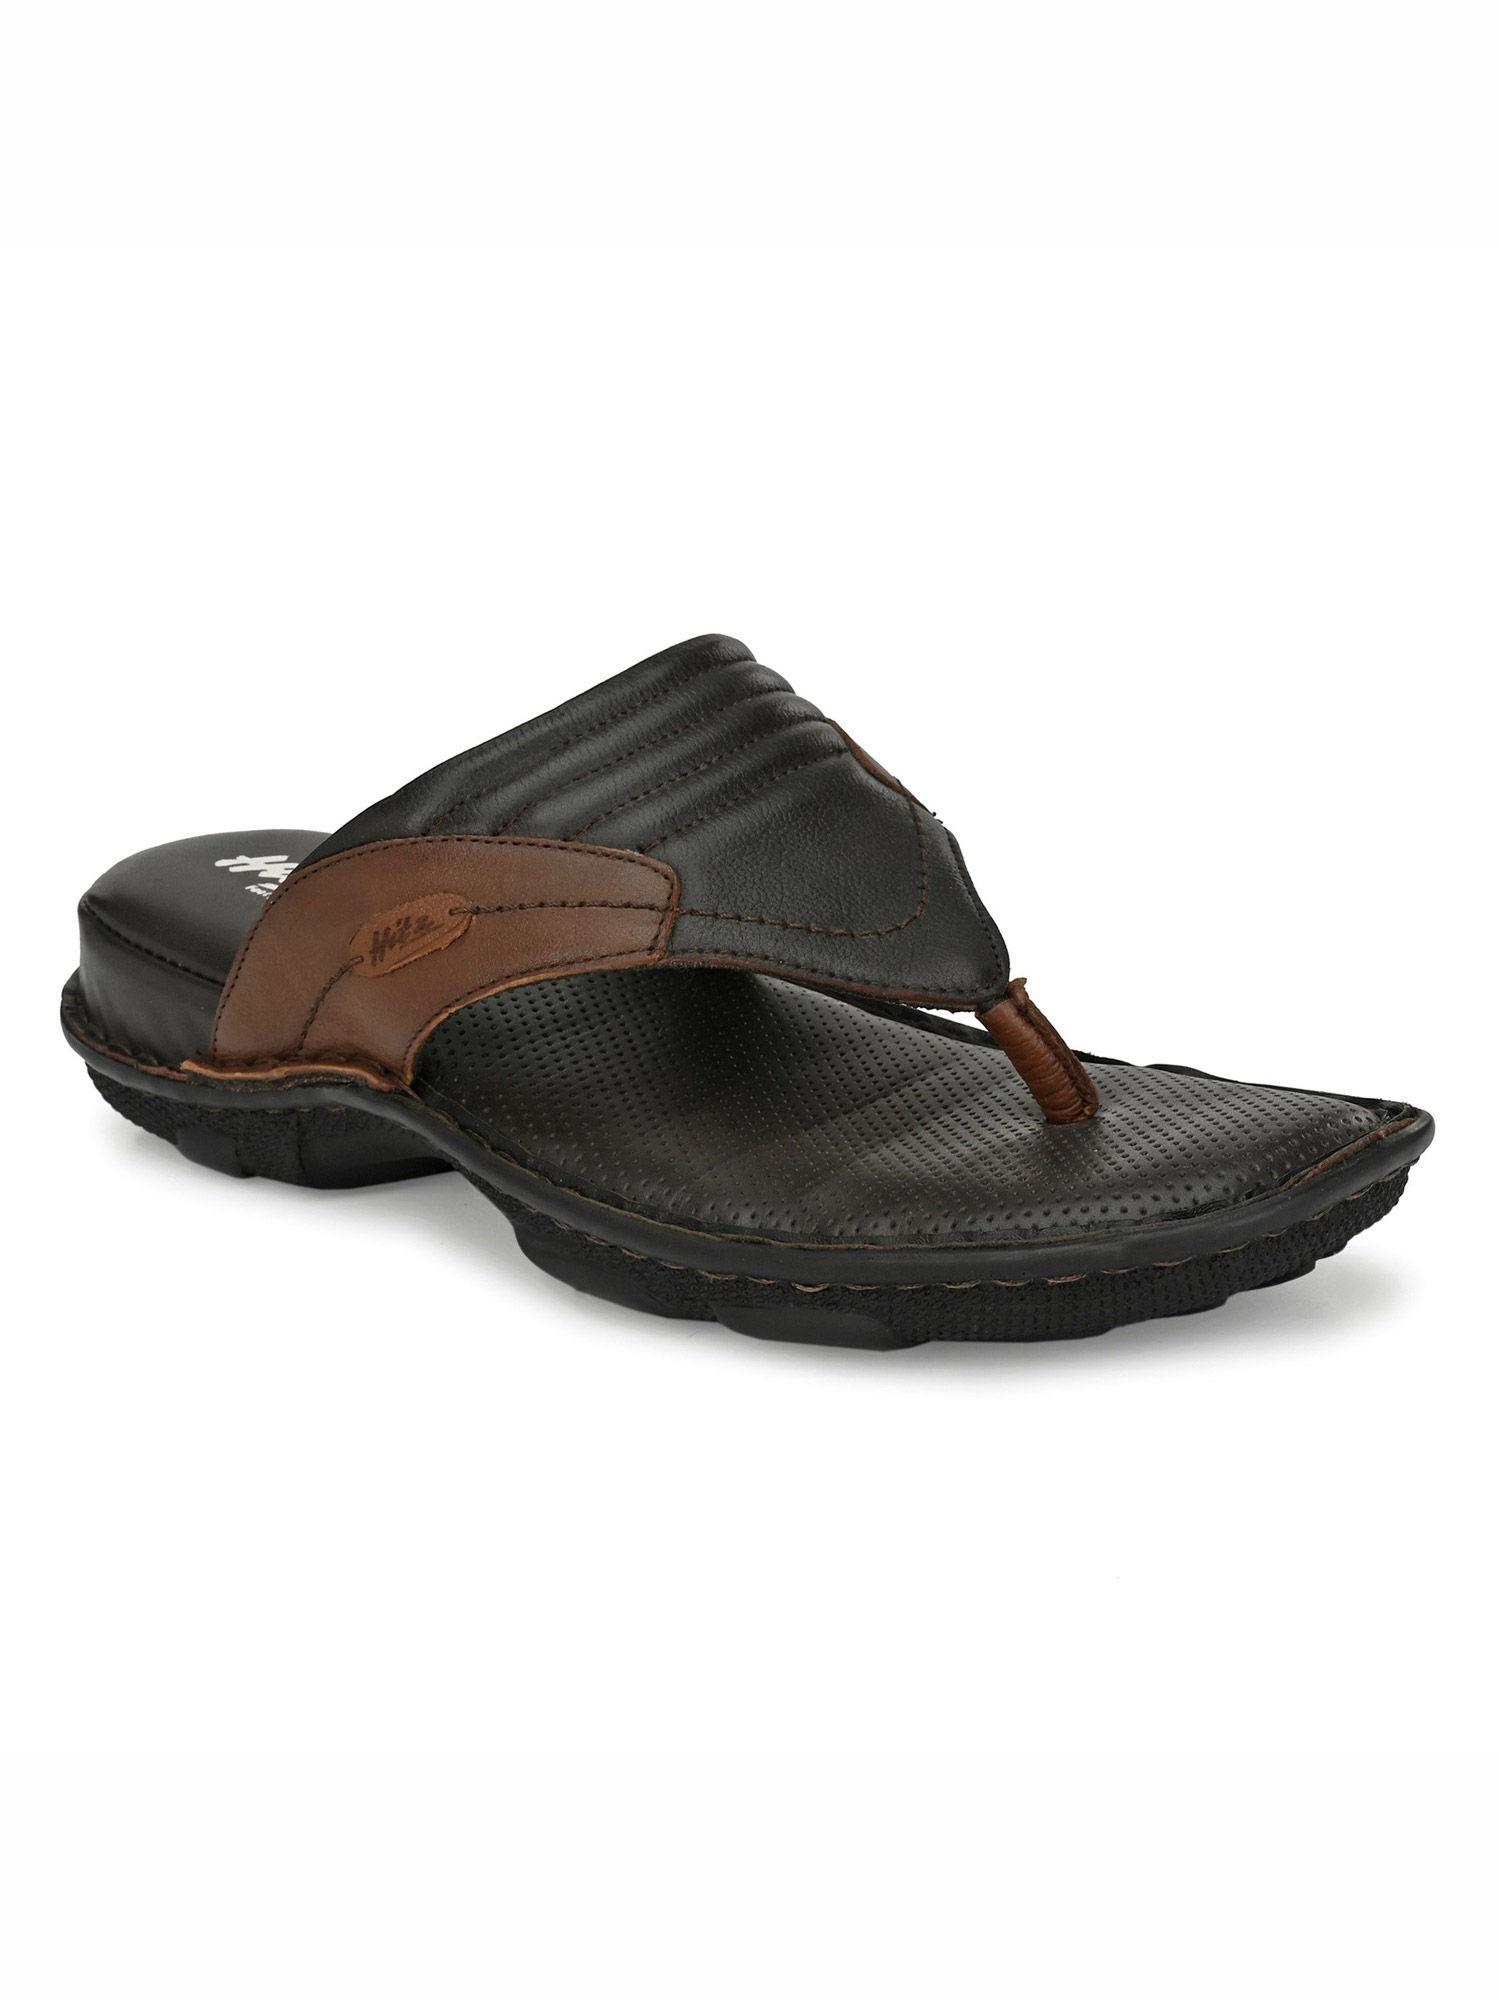 men's brown leather open toe comfort slippers